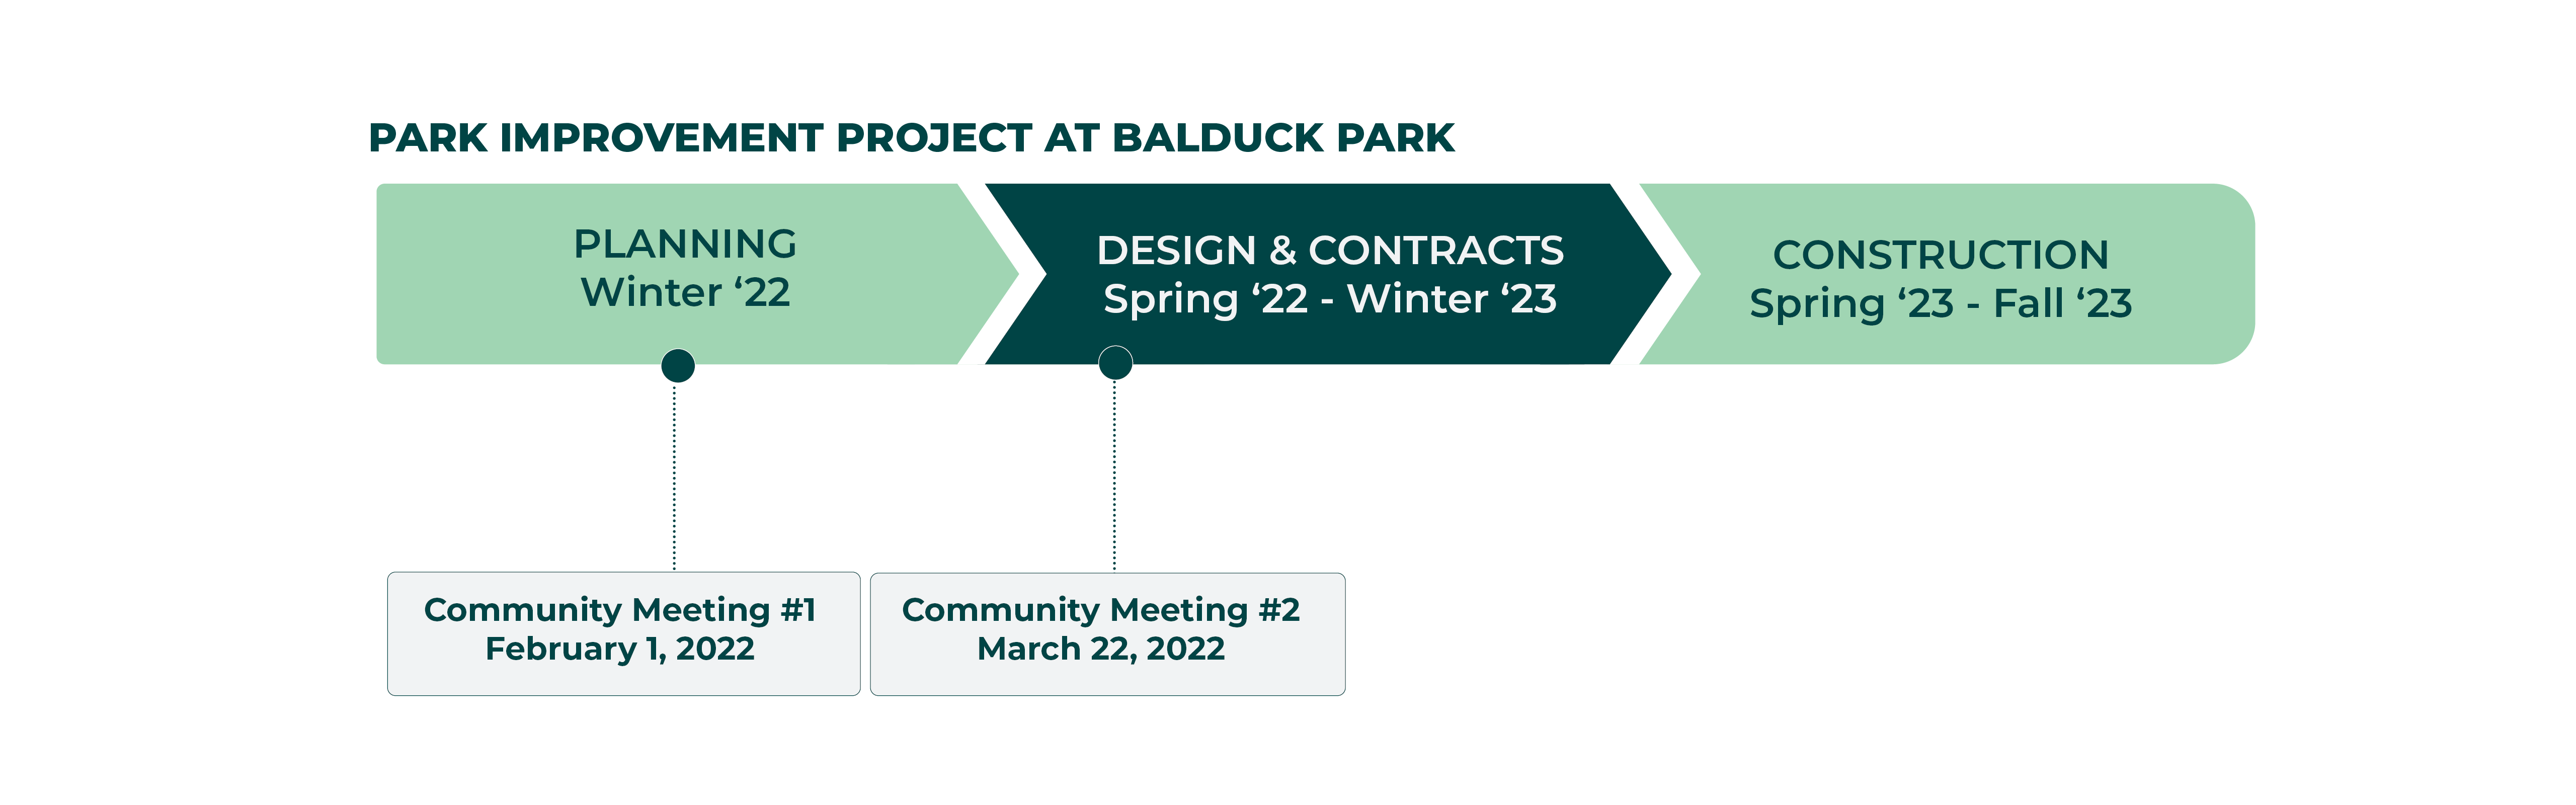 Timeline for Balduck Park Improvements